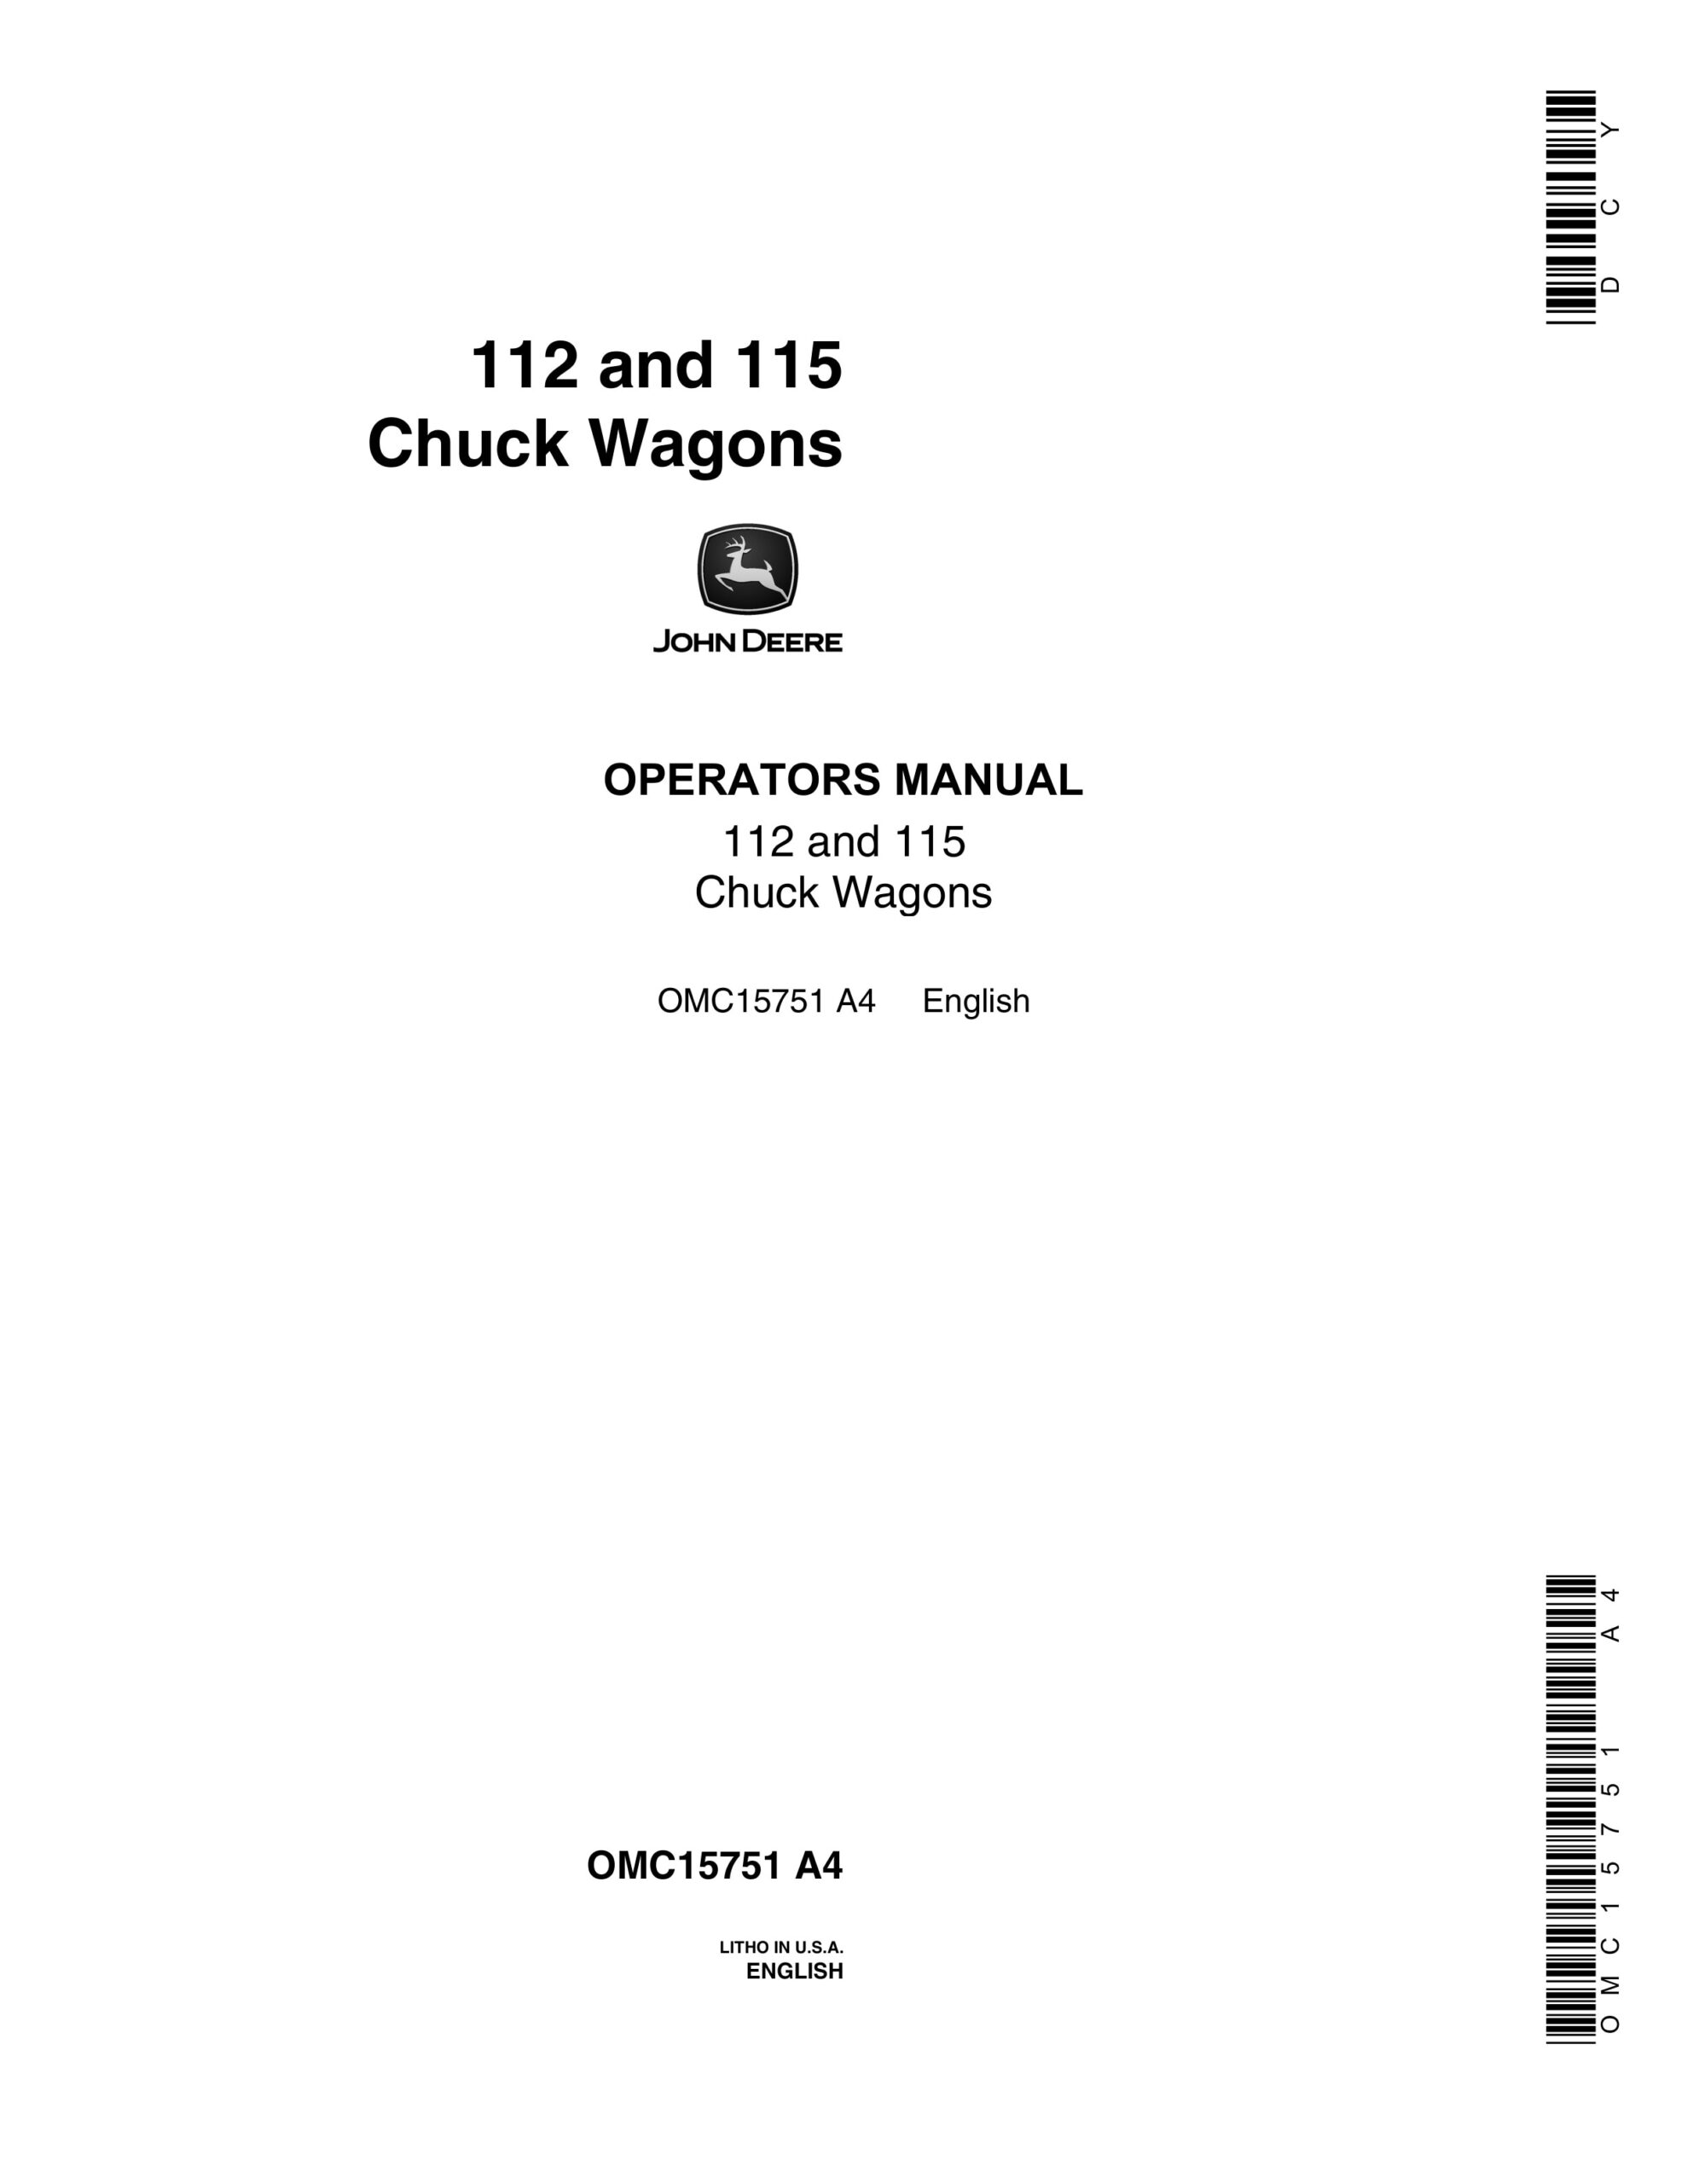 John Deere 112 and 115 Chuck Wagon Operator Manual OMC15751-1